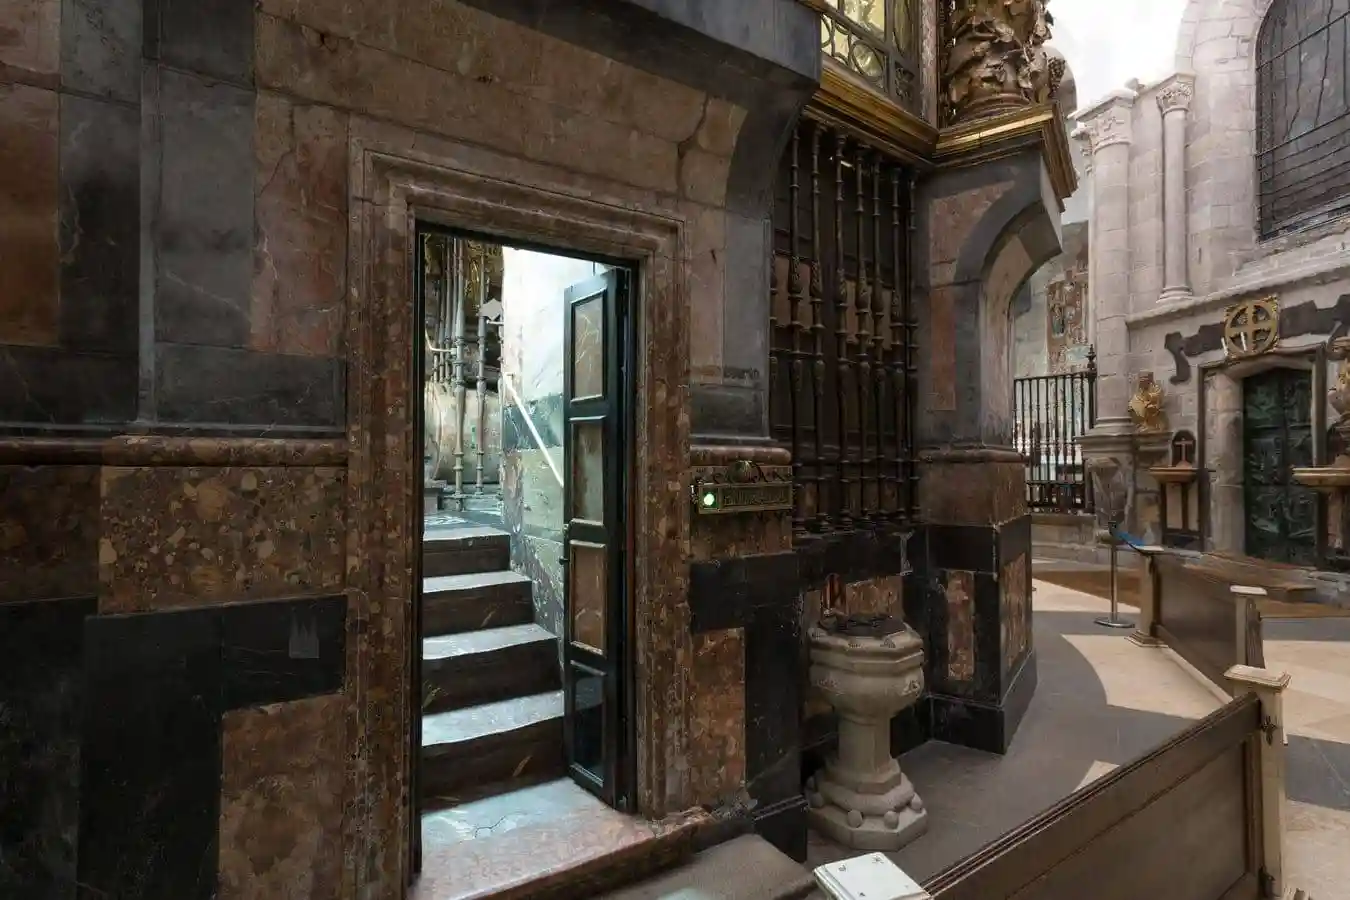 Puerta de acceso a las escaleras del abrazo. Se abren a la girola de la catedral